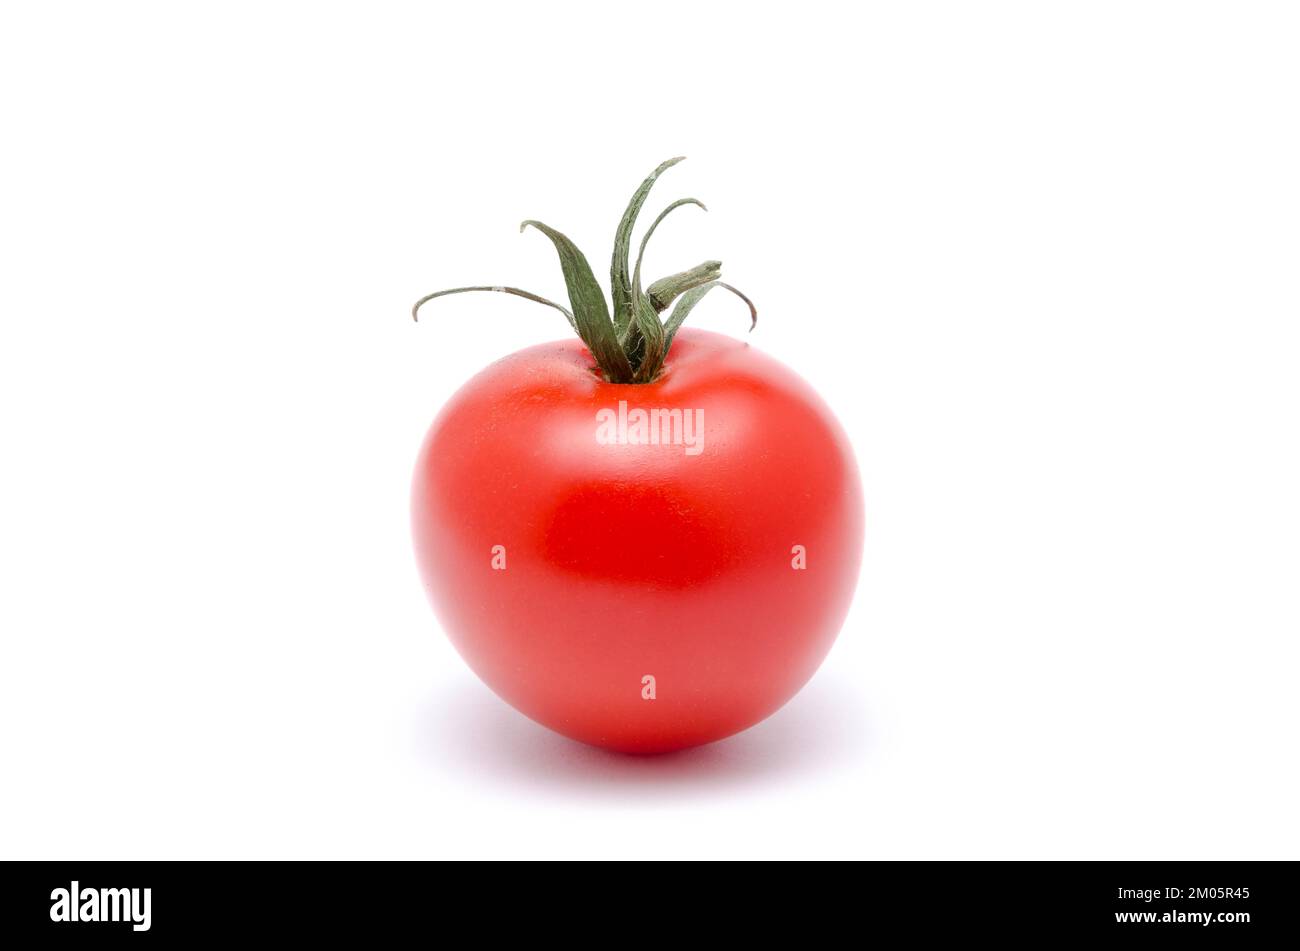 Red ripe tomato, Solanum lycopersicum, isolated on white background Stock Photo